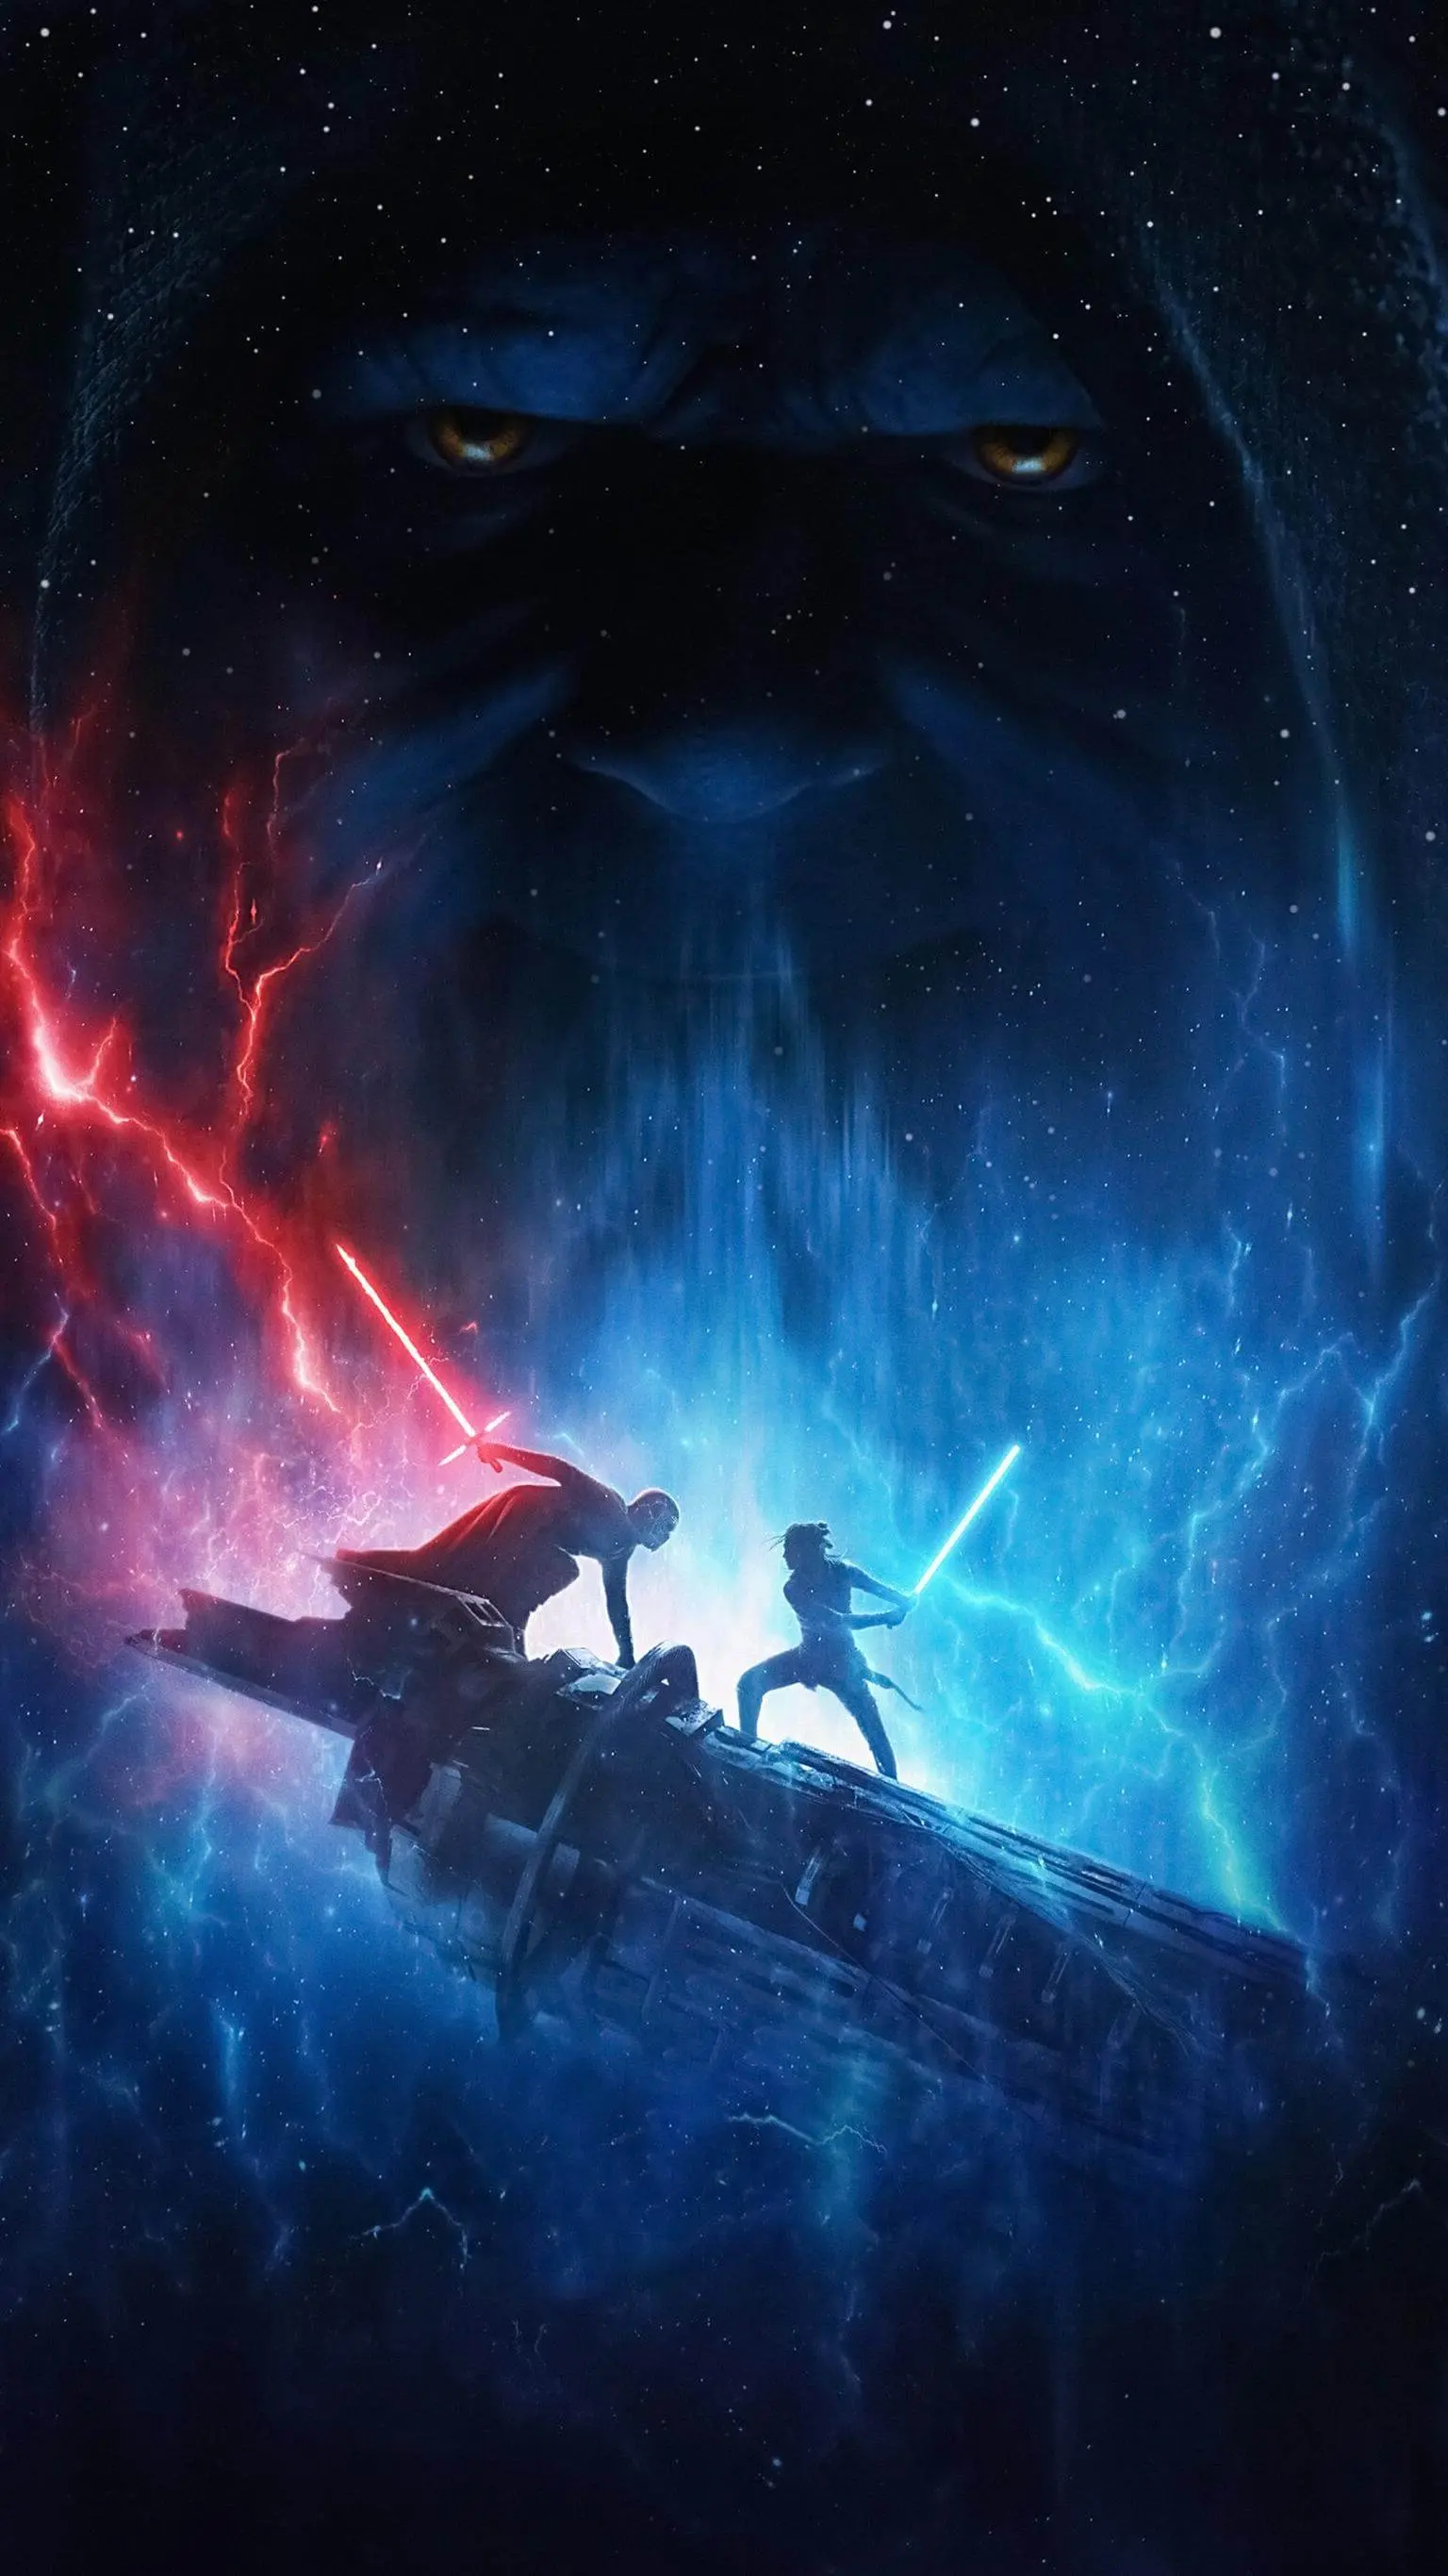 Lihat Star Wars: The Rise of Skywalker - QuanTriMang.com